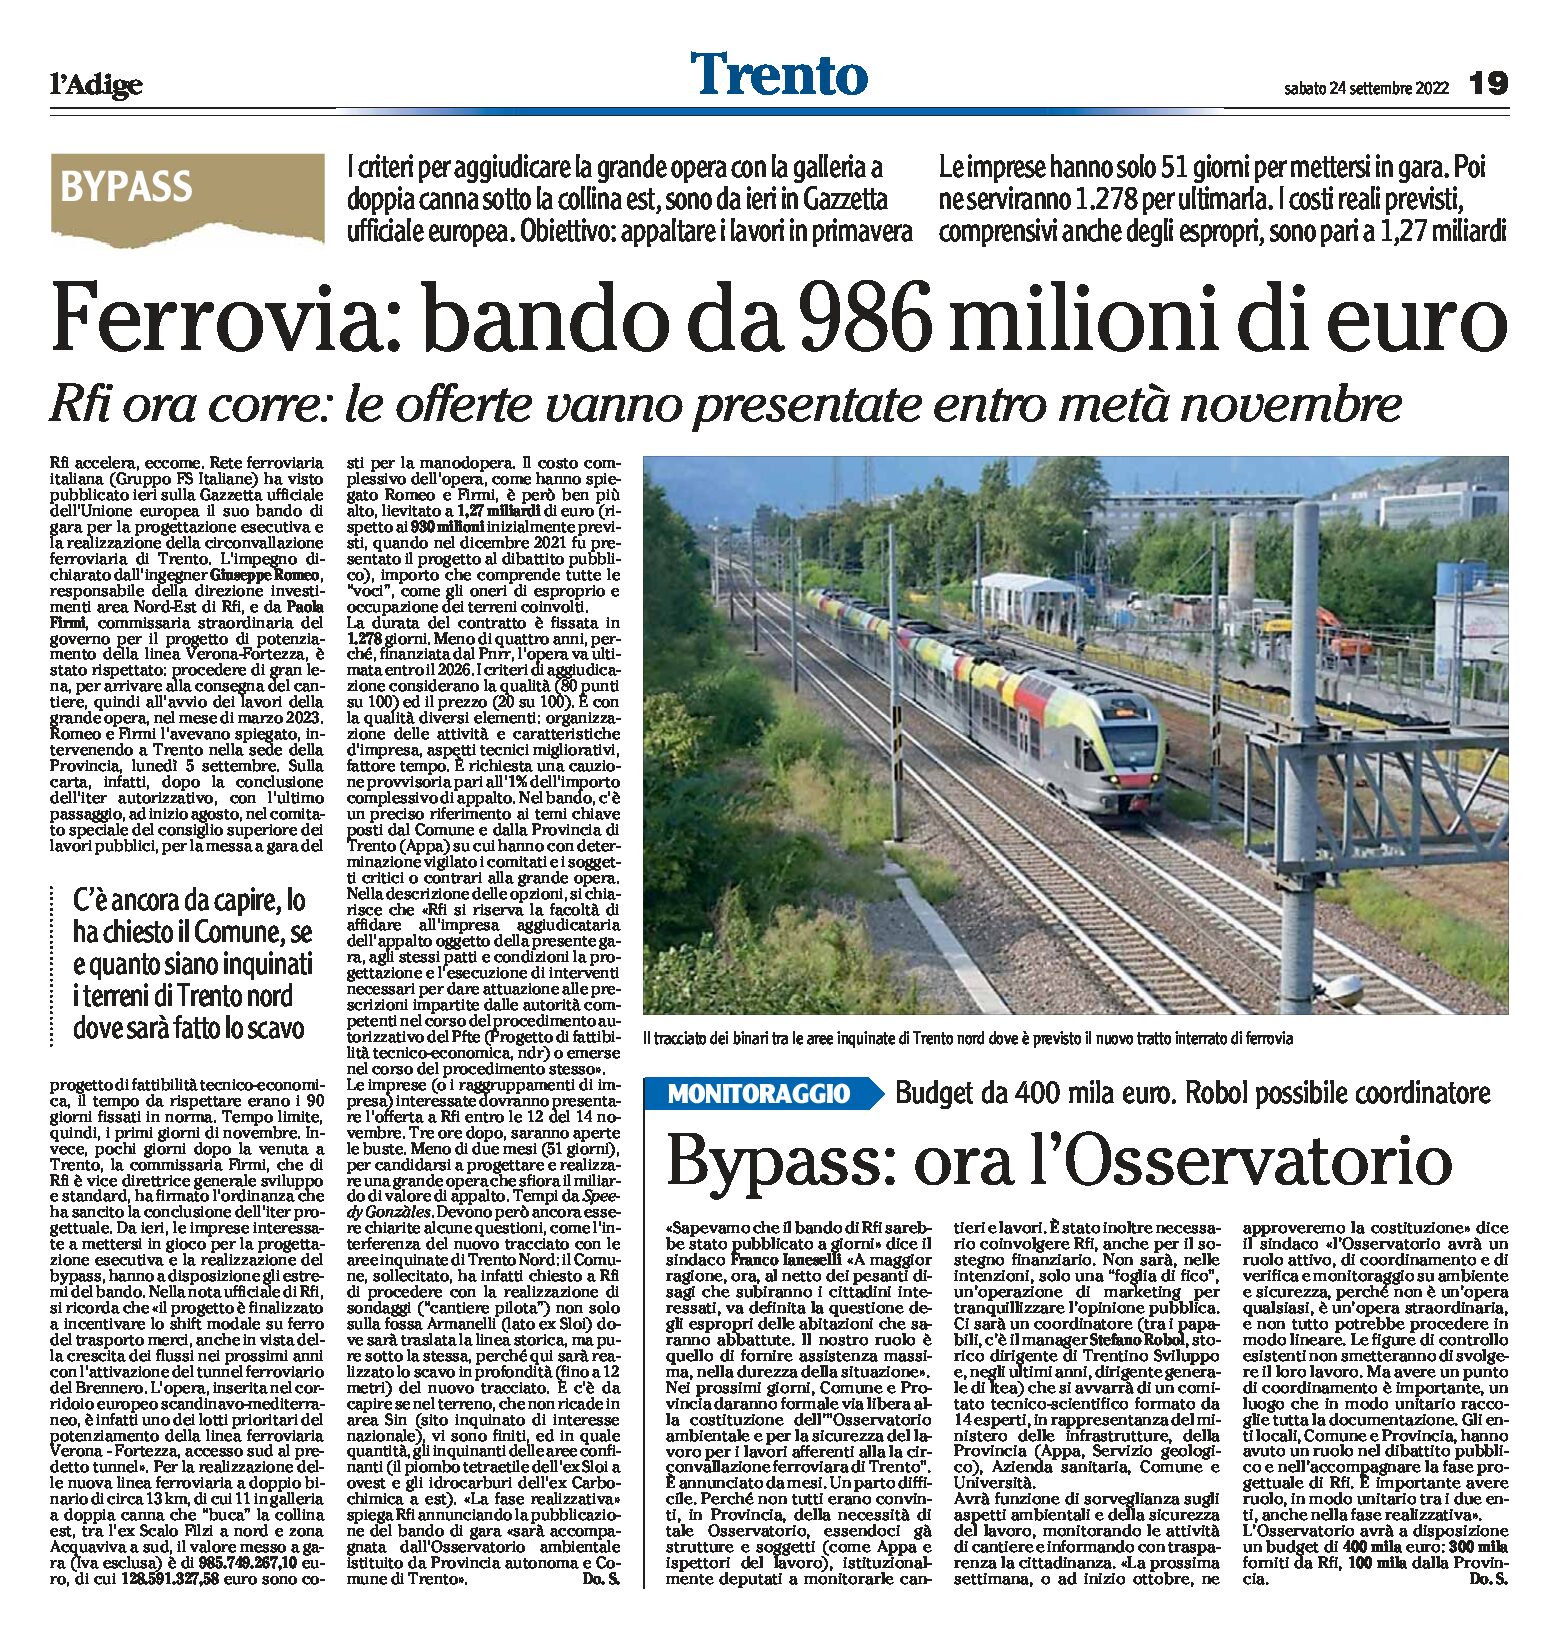 Trento, bypass ferroviario: bando da 986 milioni di euro. Le offerte vanno presentate entro metà novembre